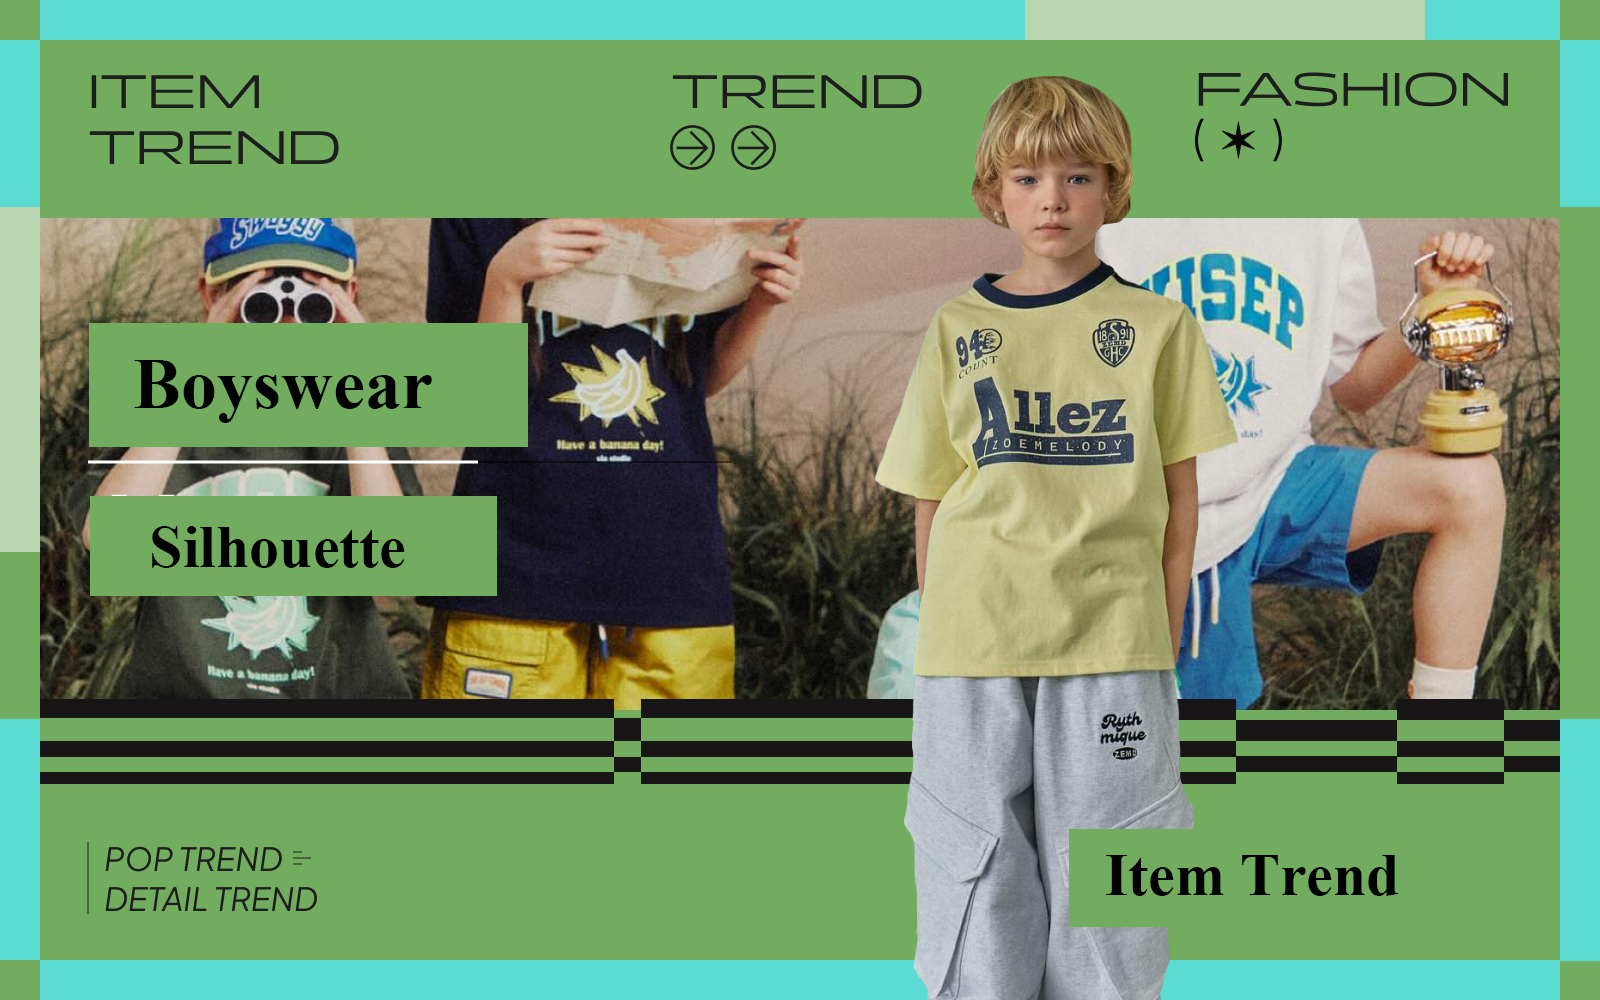 The Silhouette Trend for Boyswear